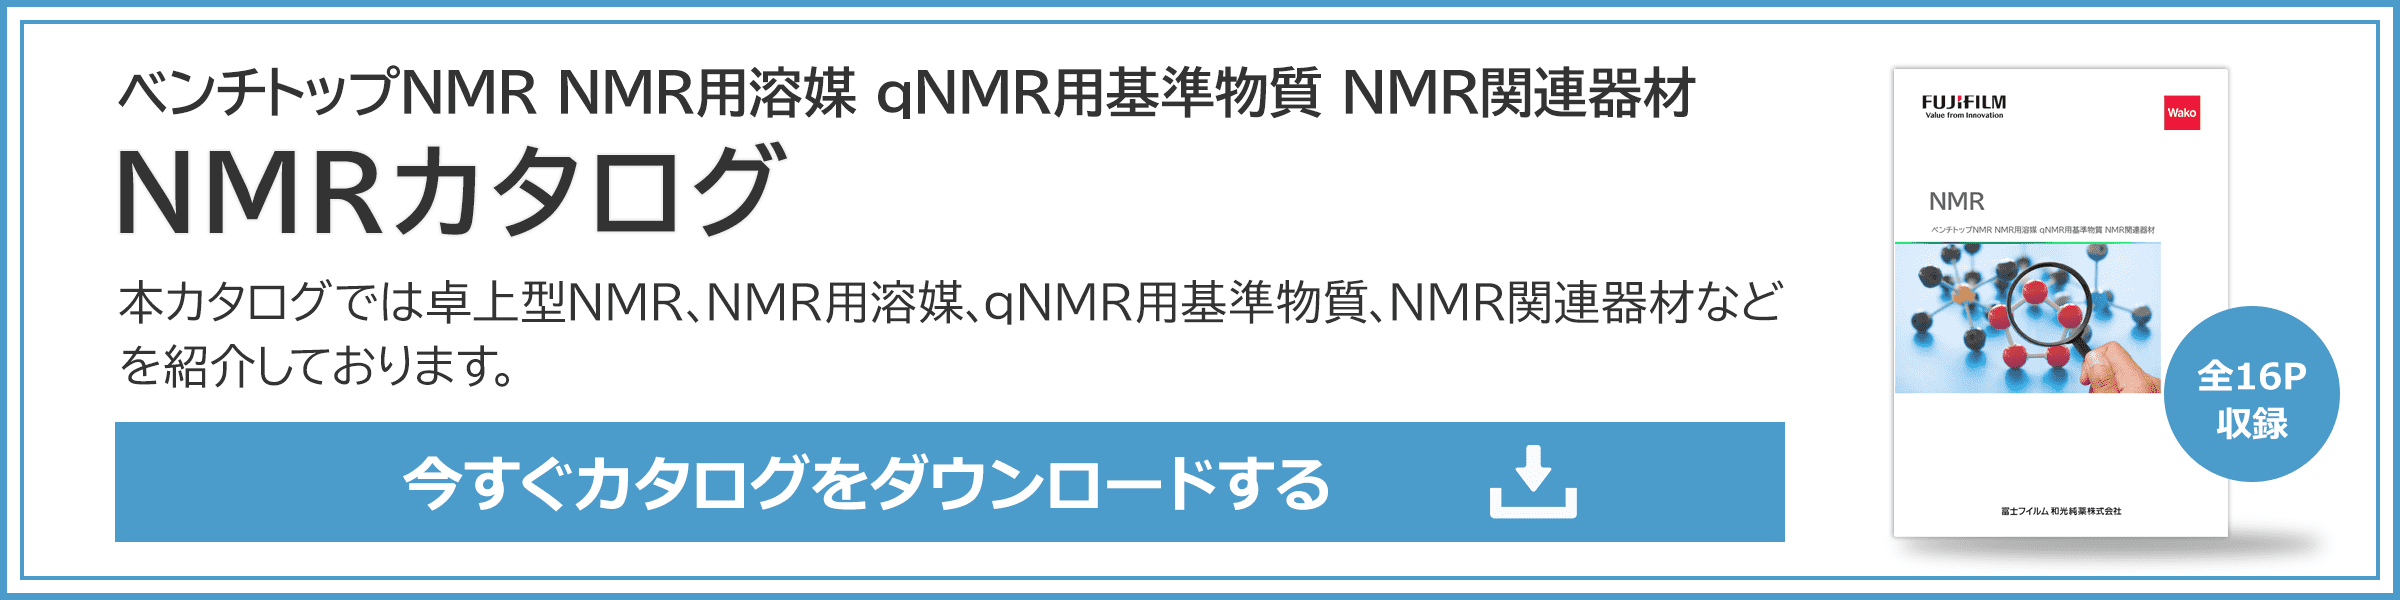 NMRカタログダウンロード申し込み